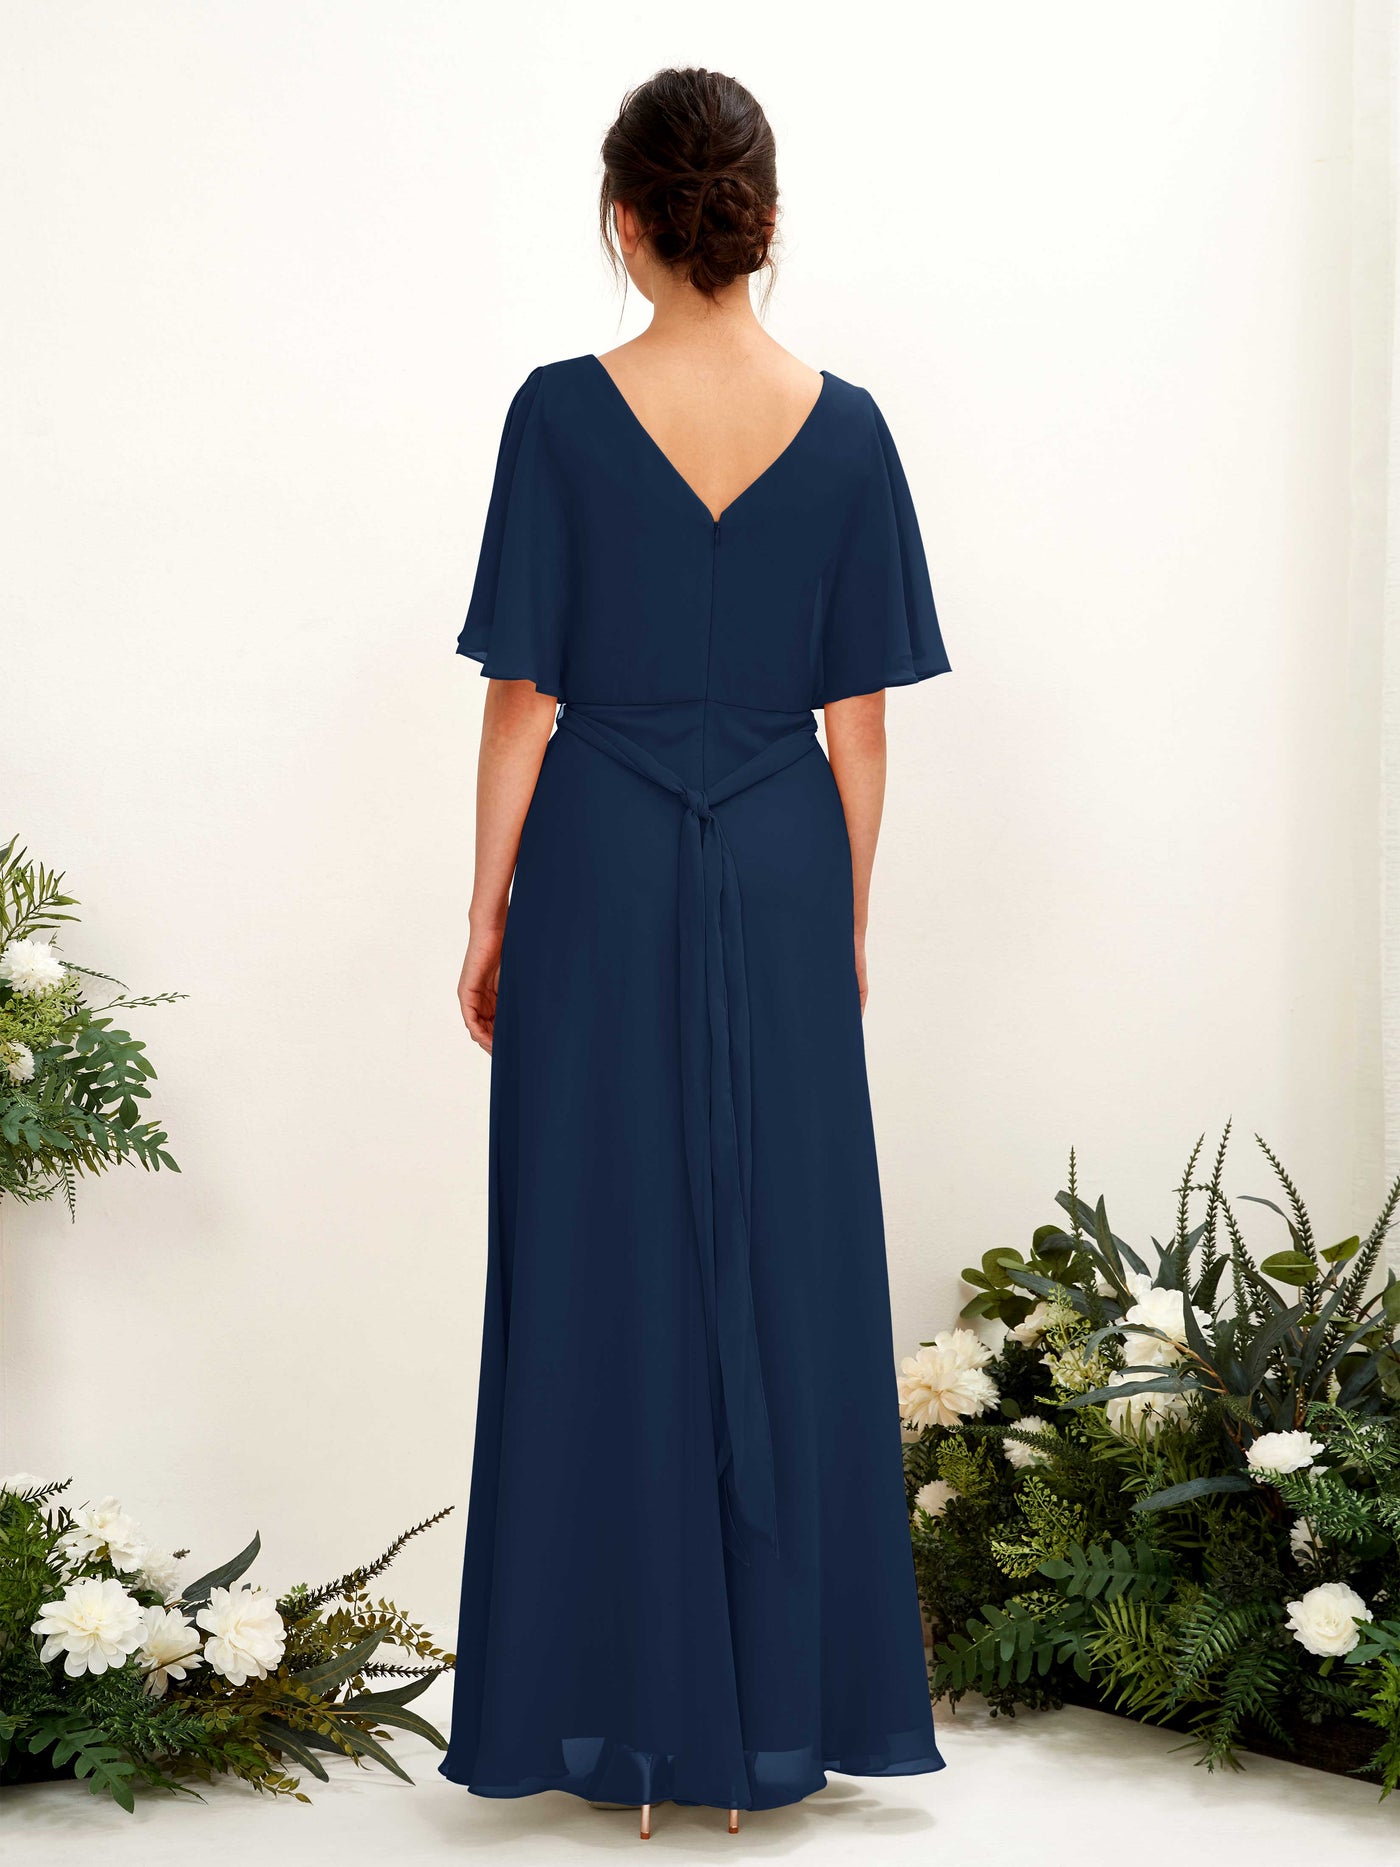 V-neck Short Sleeves Chiffon Bridesmaid Dress  (81222413)#color_navy